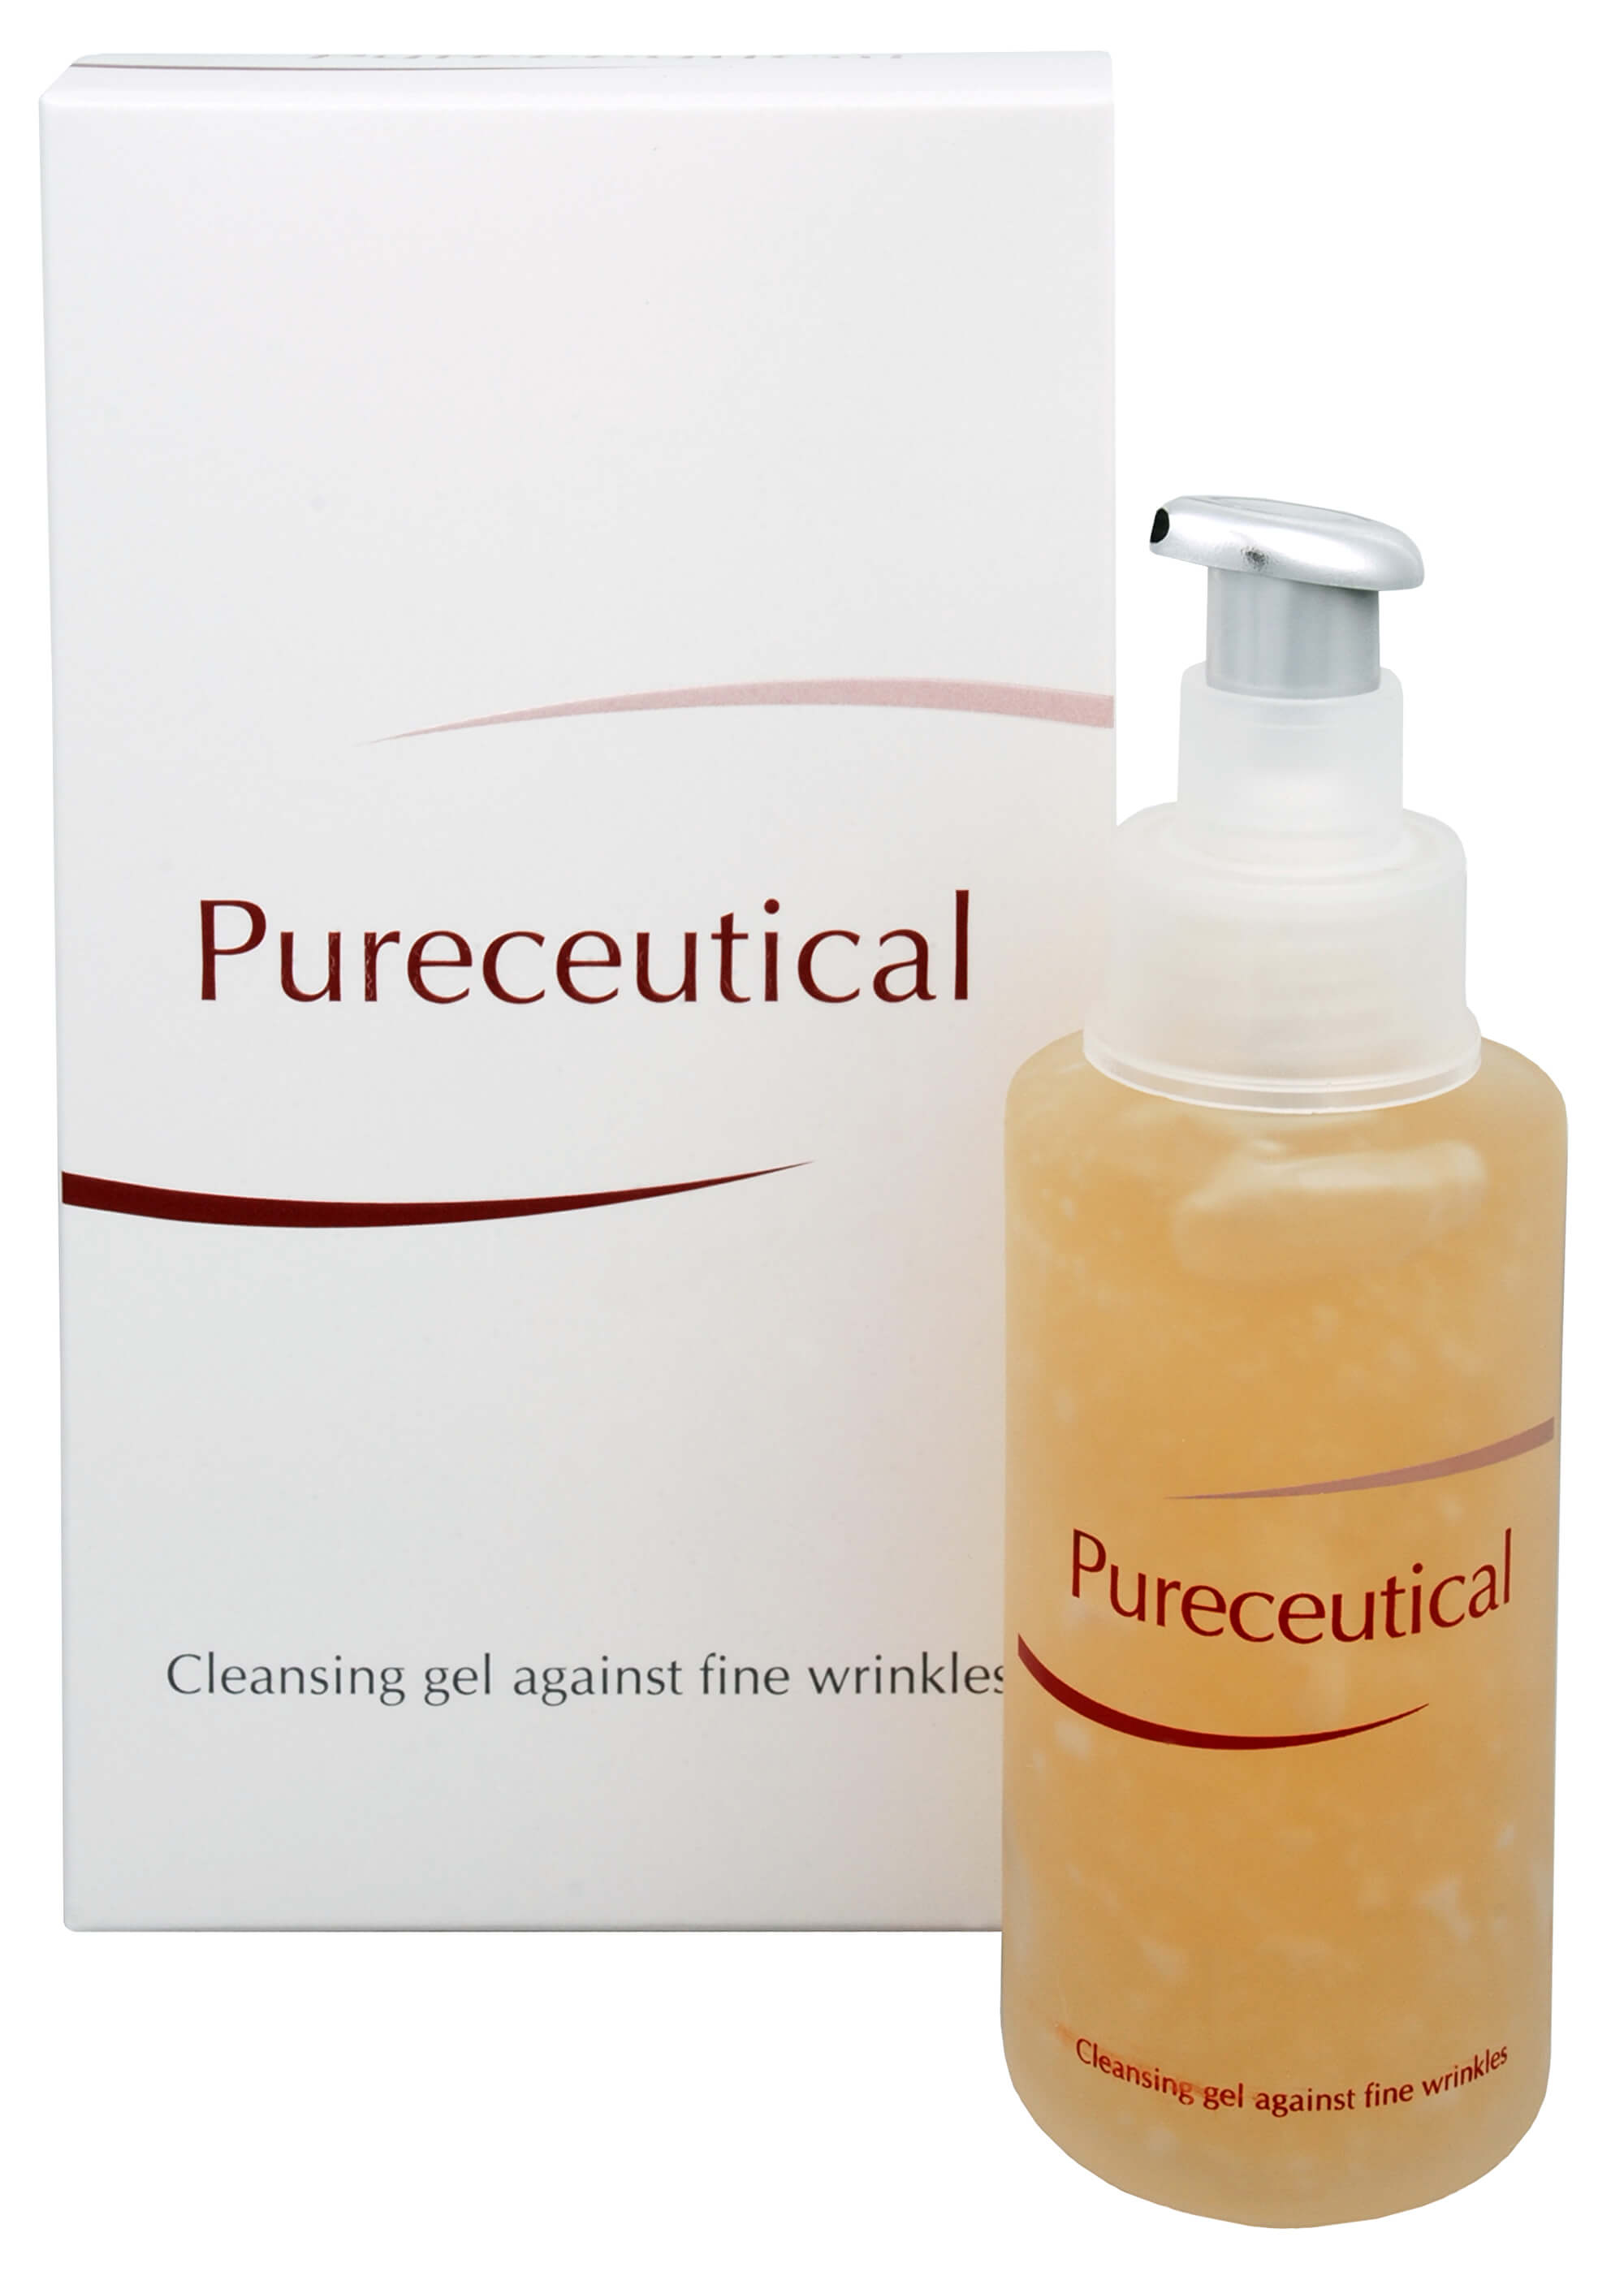 Zobrazit detail výrobku Fytofontana Pureceutical - čisticí gel proti jemným vráskám 125 ml